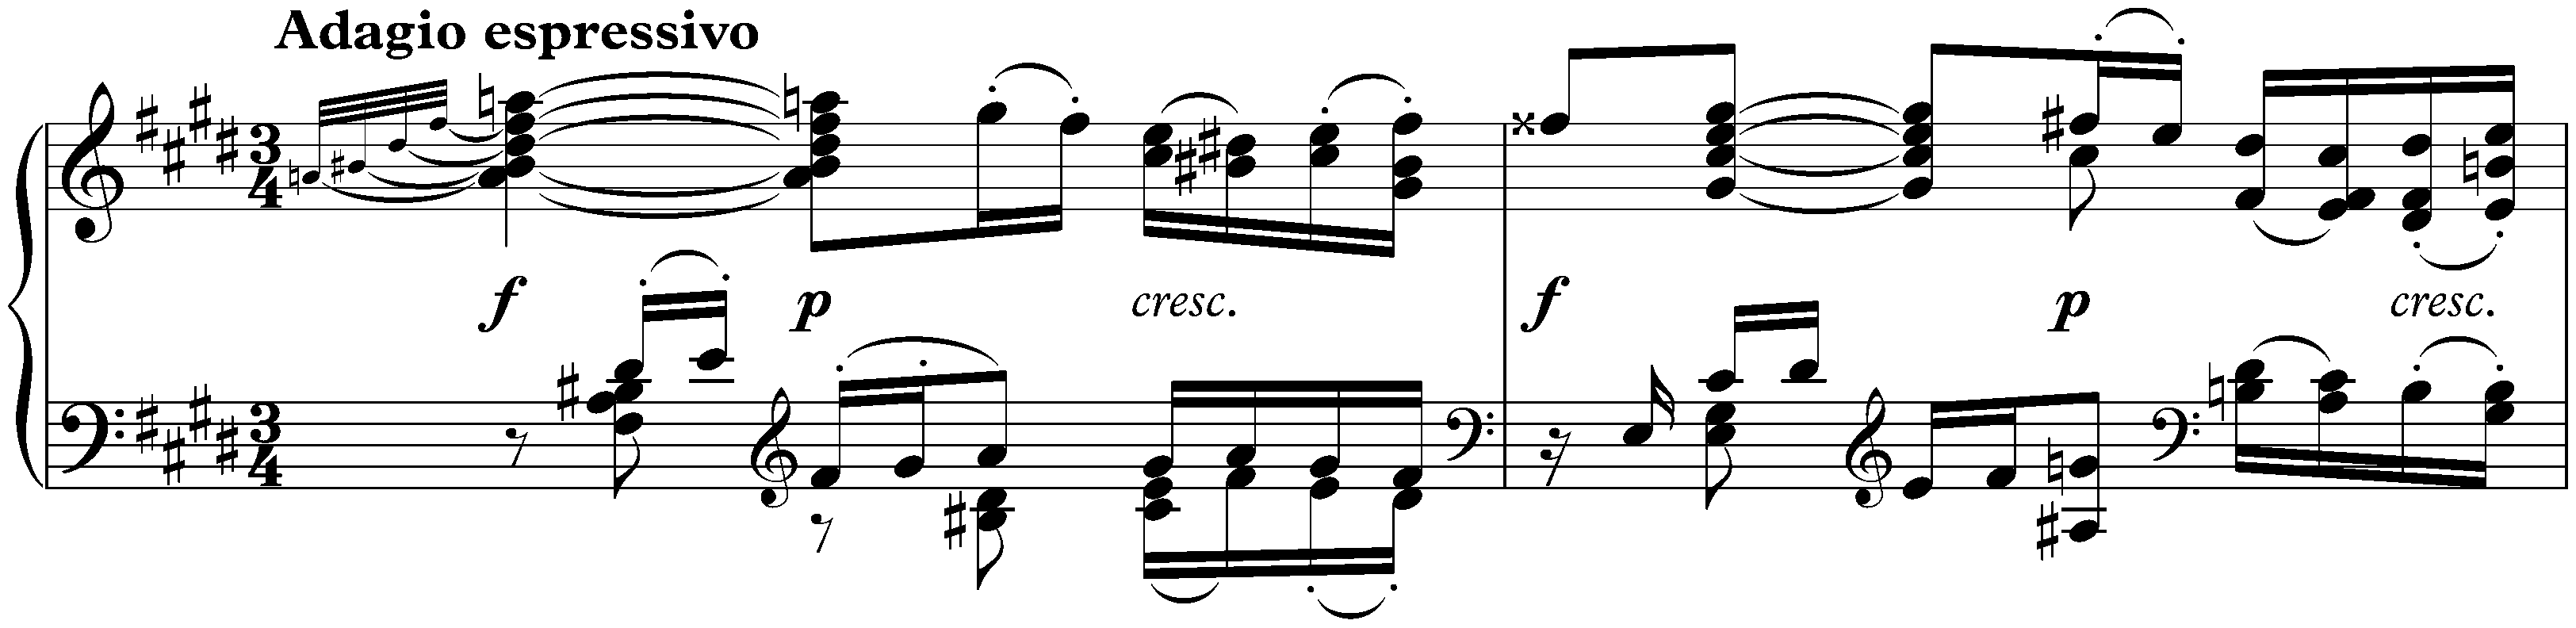 Sonata no. 30 in E major, op. 109; 1. Vivace, ma non troppo – Adagio espressivo